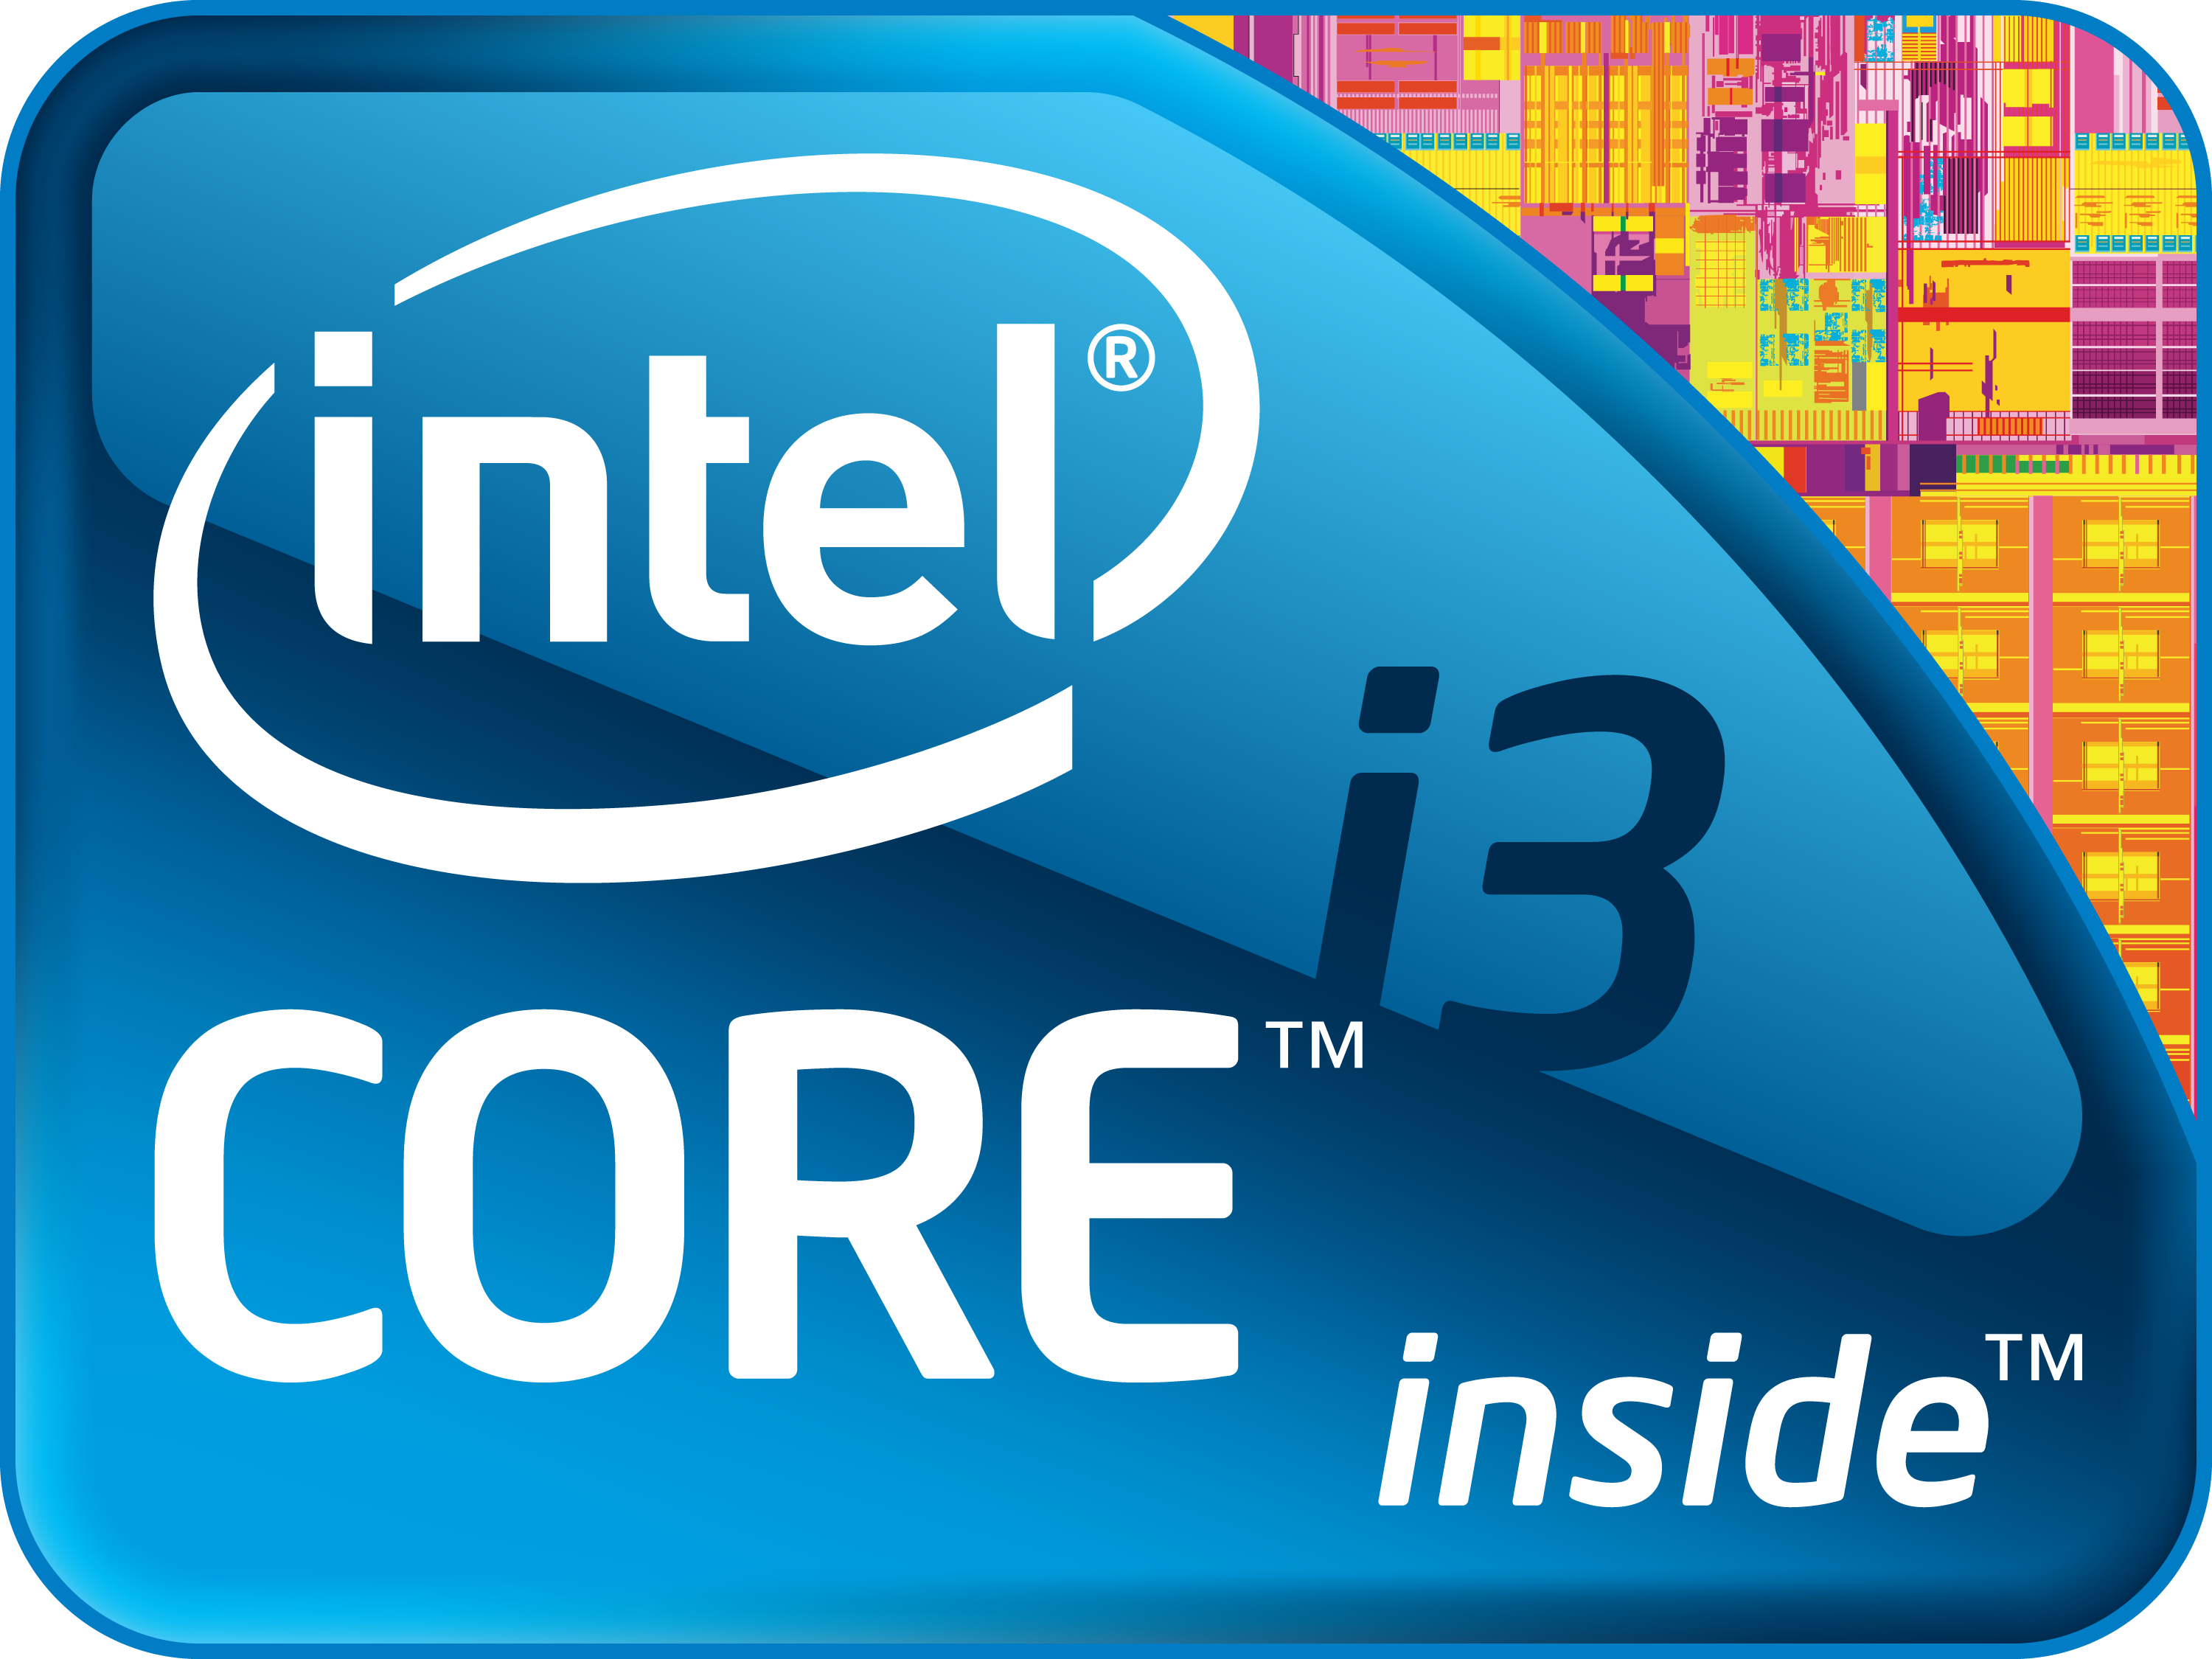 Интел сор. Intel Core i3 logo. Intel Core i5 логотип. Значок Intel Core i5. Intel Core i3 обои.